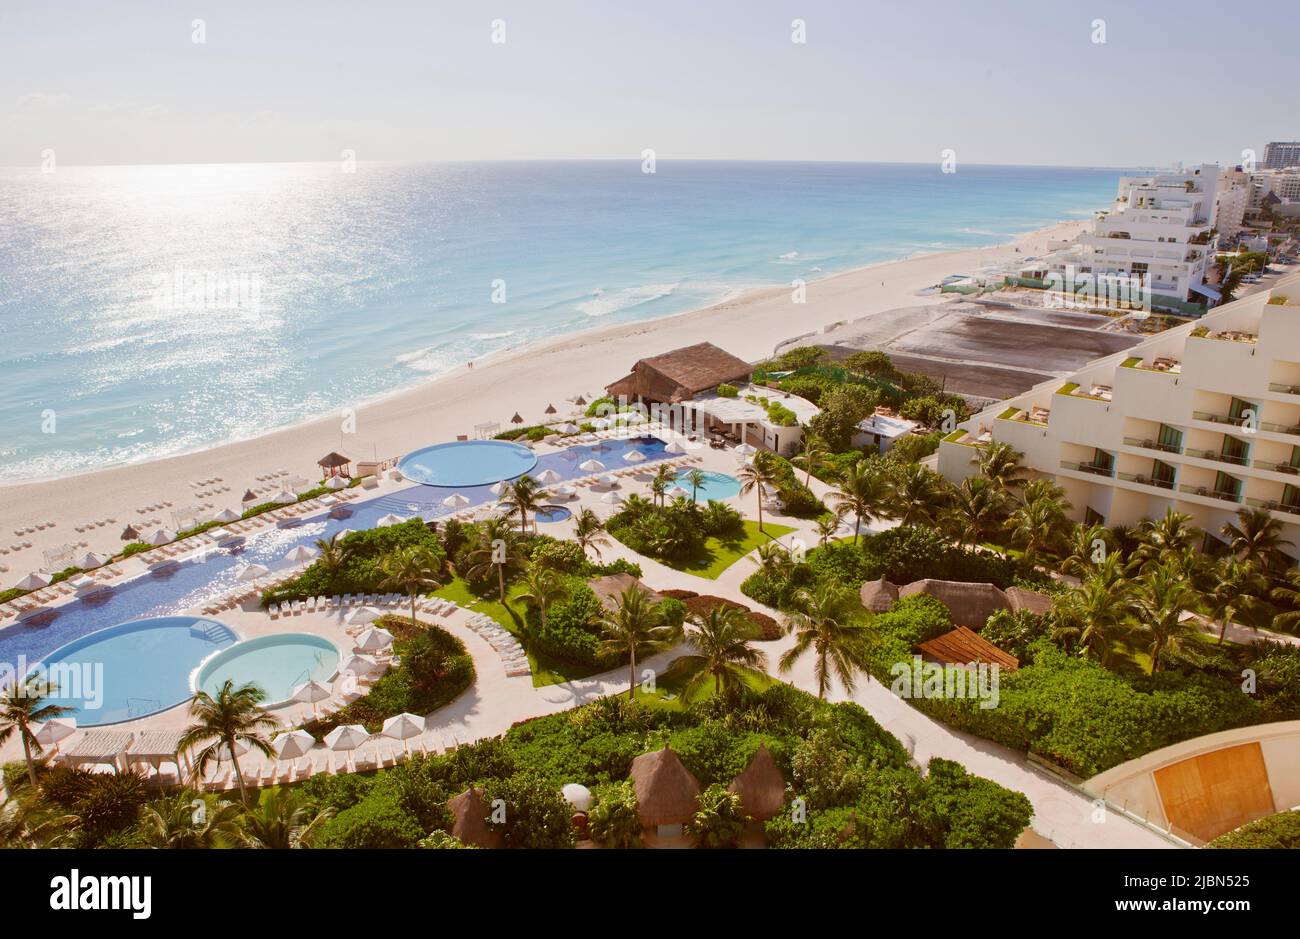 Die Aussicht von Zimmer 3016 im Live Aqua Resort & Spa, einem luxuriösen All-Inclusive-Hotel mit 371 Zimmern in Cancuns Hotelzone. Cancun, Quintana Roo, Mexiko. Stockfoto